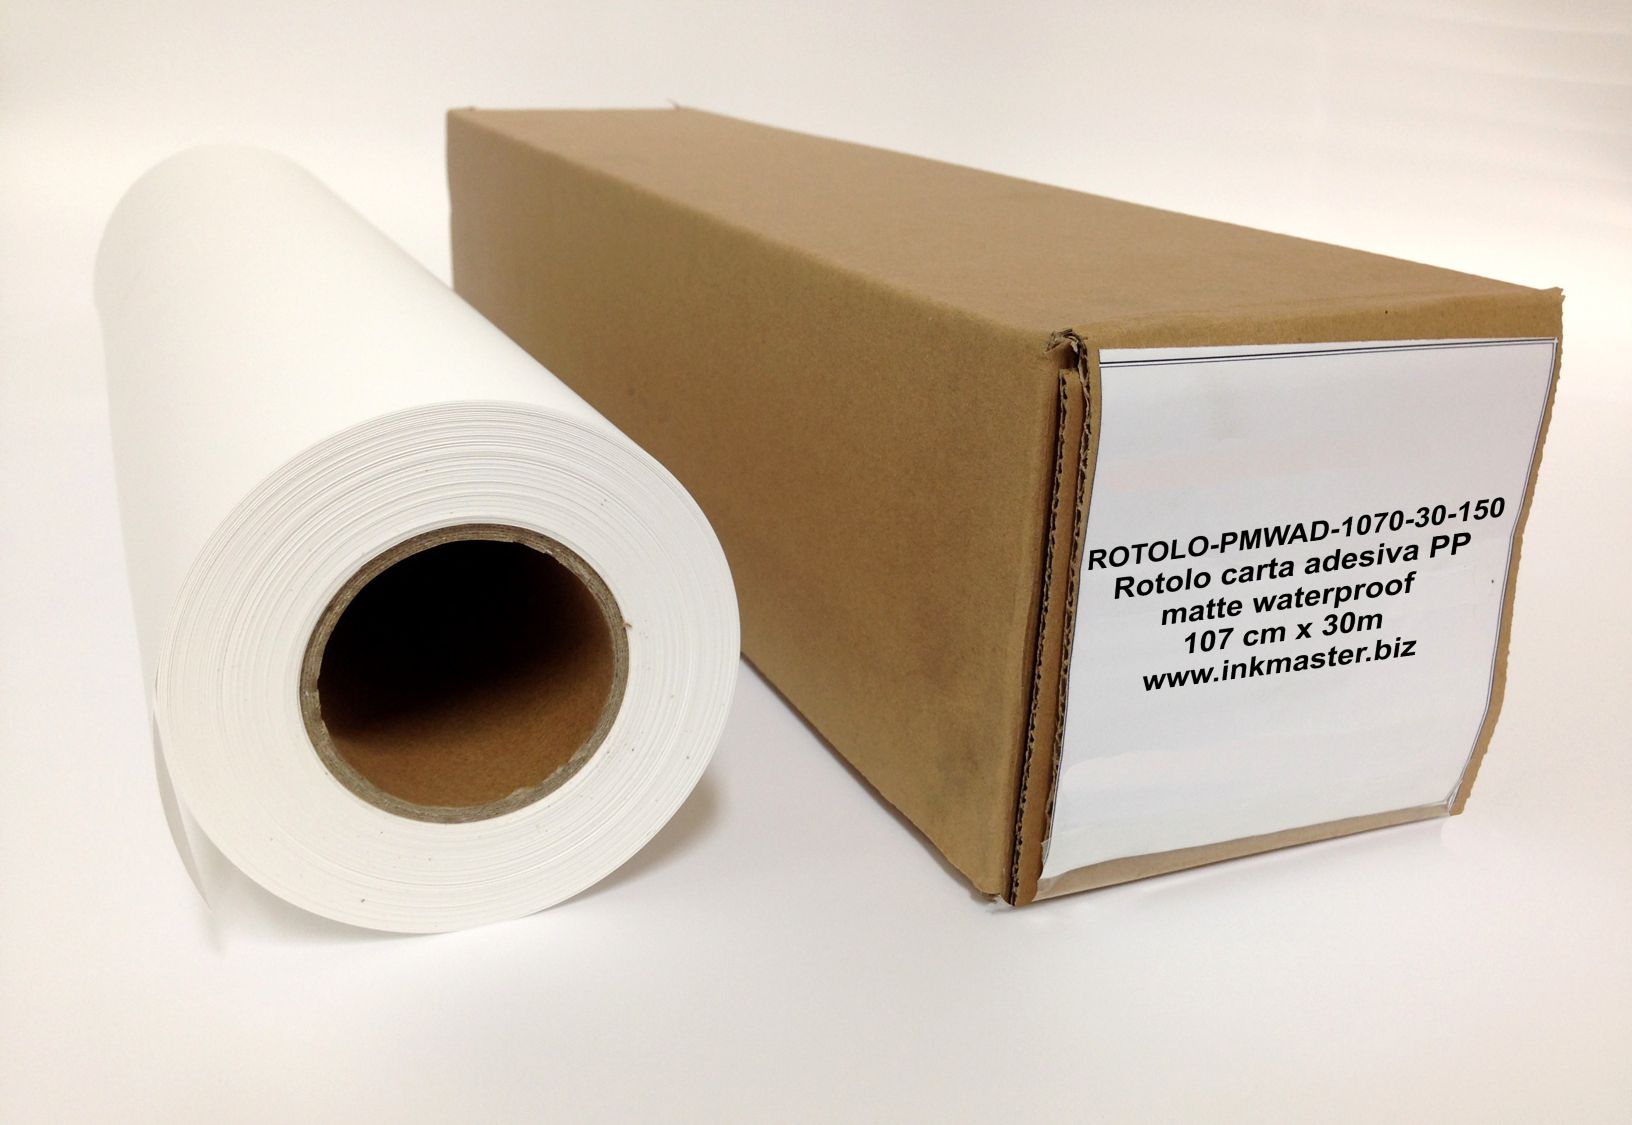 Rotolo carta adesiva PP matte waterproof. DYE, PIGMENTI. 1070mm X 30m. 150g/m2.